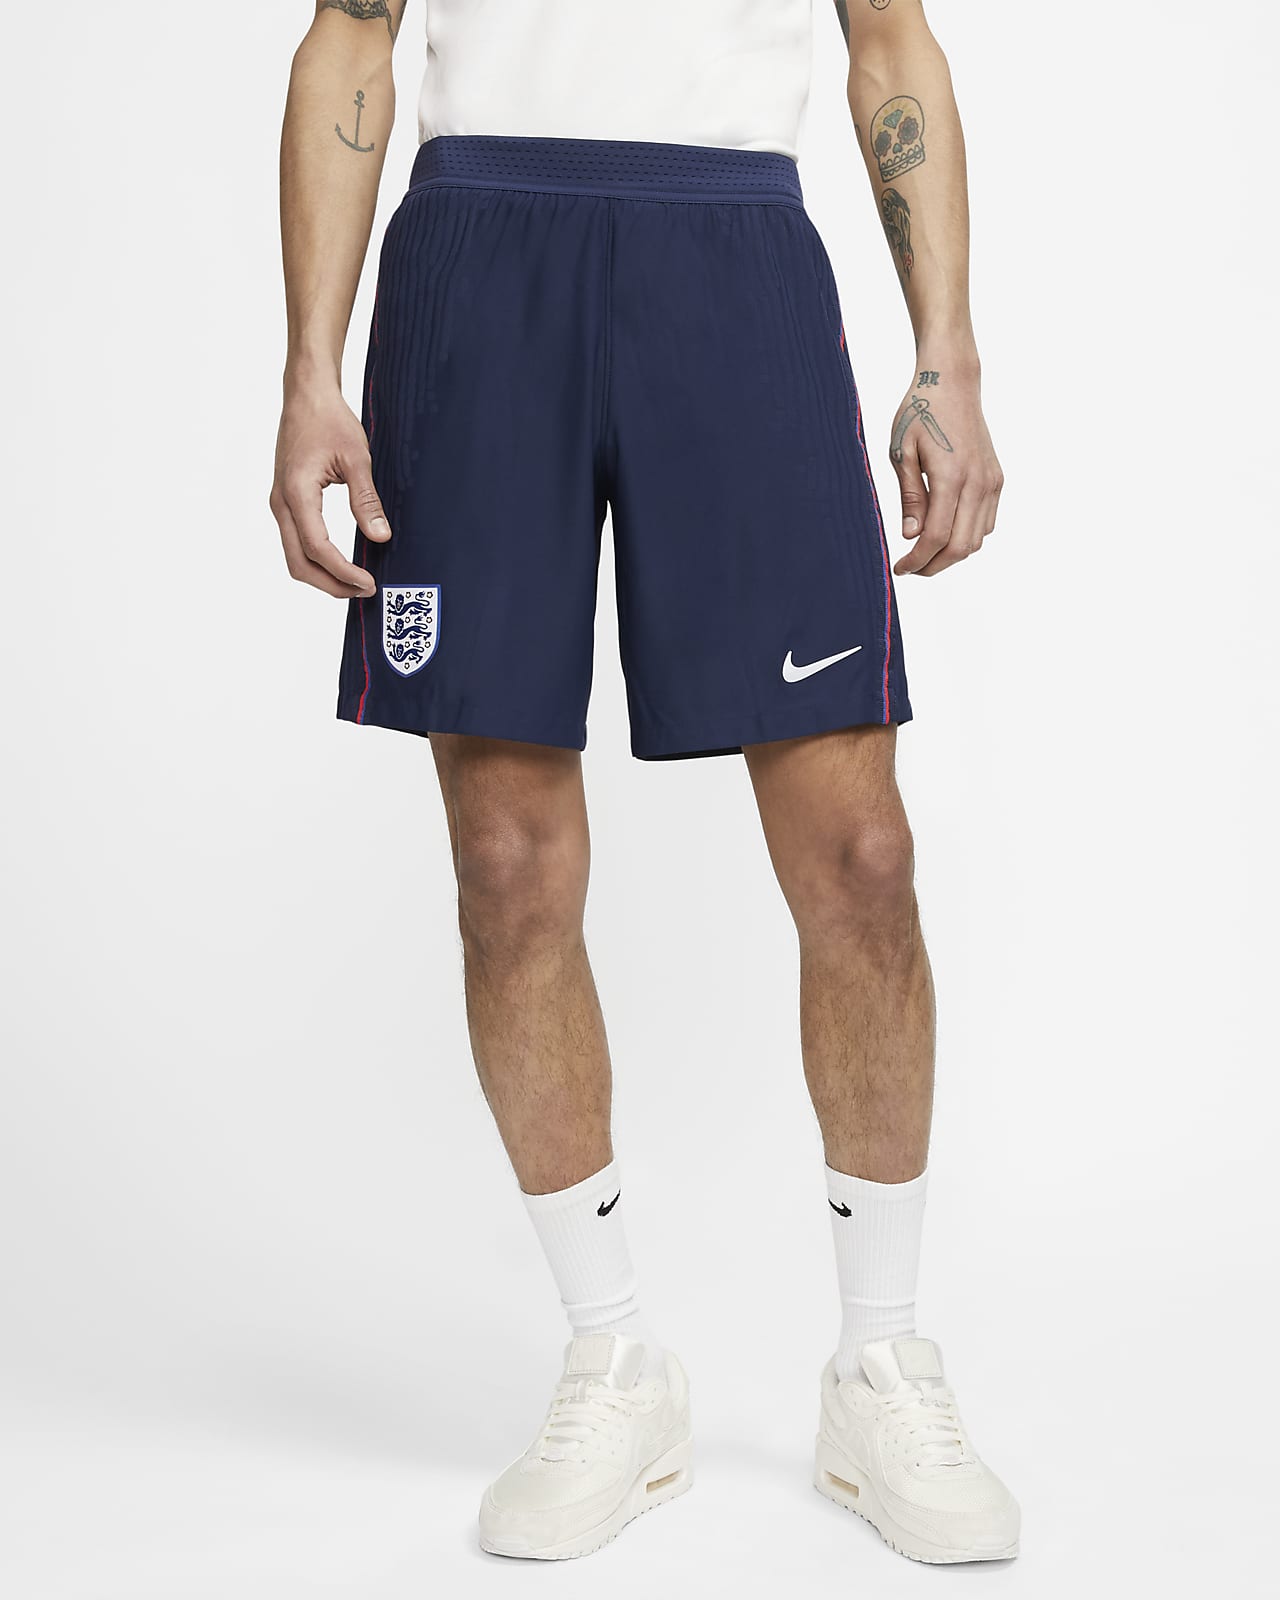 england nike shorts